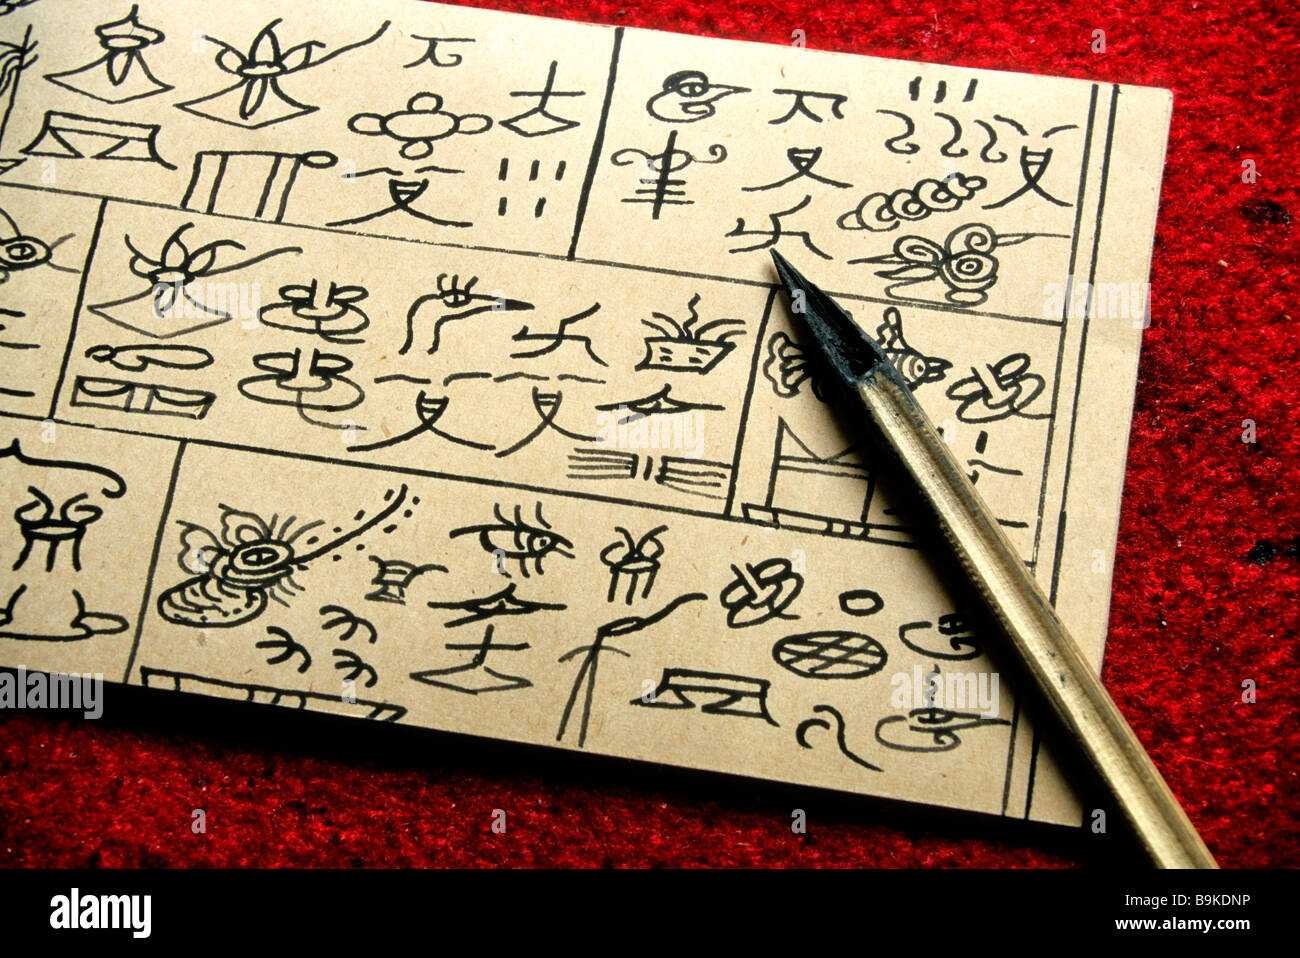 China, Yunnan Province, Lijiang, Naxi pictographic writing Stock Photo